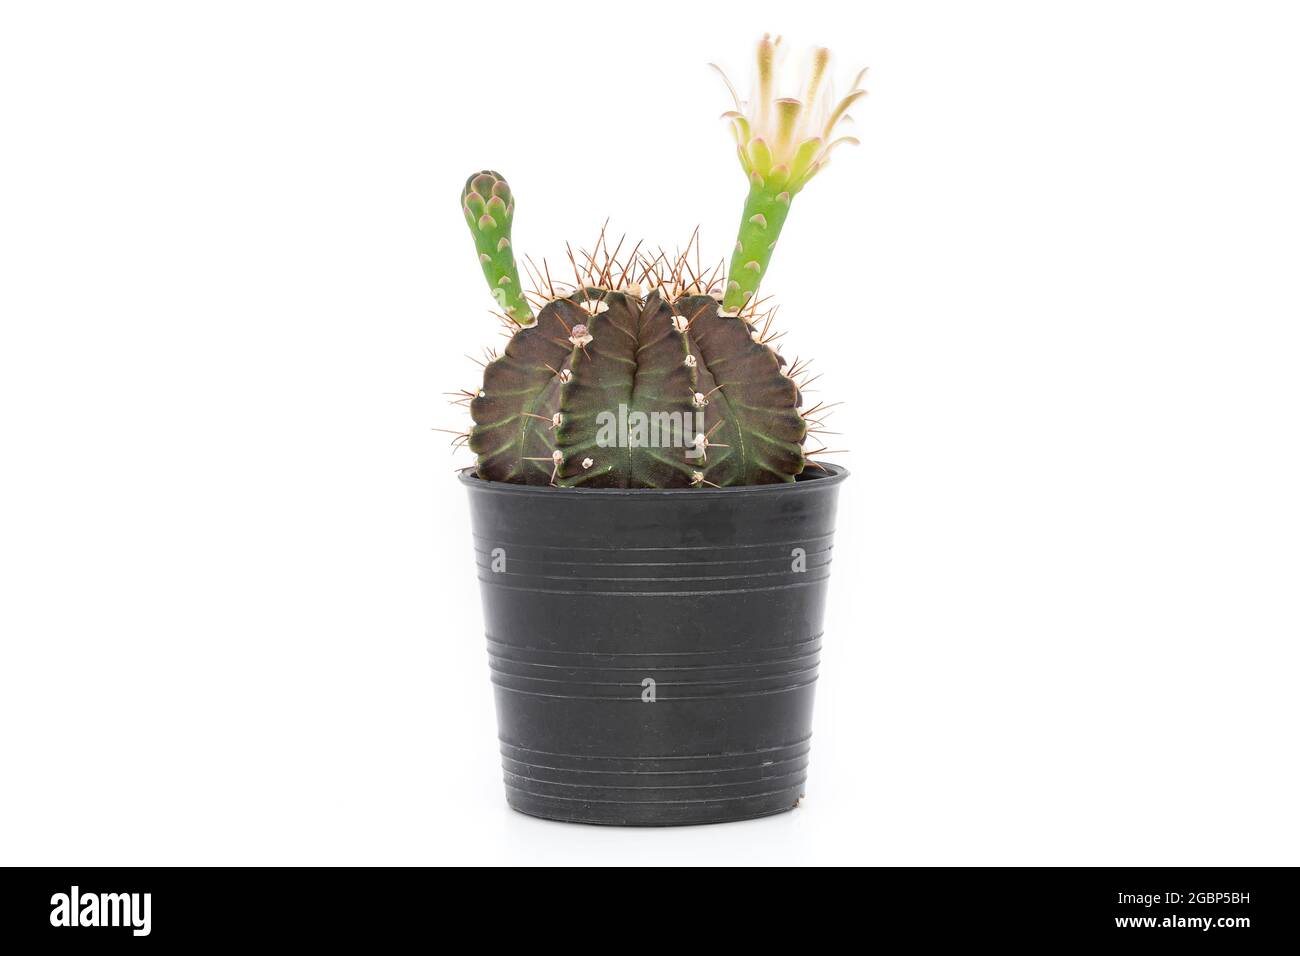 Un pequeño cactus (gymnocalycium) en una olla de plástico negro sobre un fondo blanco. Foto de stock